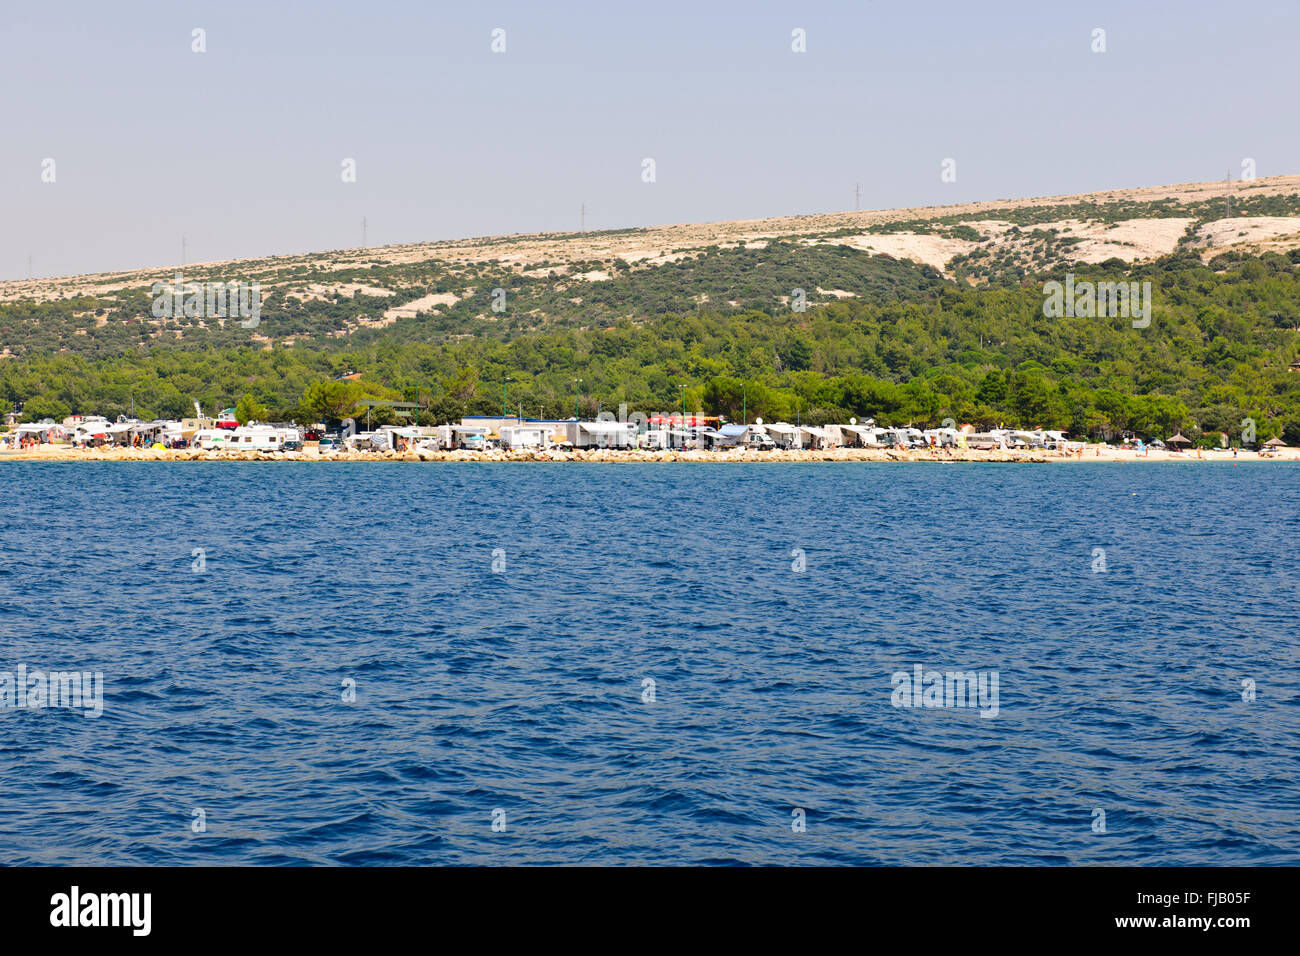 Nord-Dalmatien ist eine Region der extremen Gegensätze, Inseln, Zadar, Rab Küstengebiete, Schwimmer, Freibäder, Campingplätze, Strände, Kroatien Stockfoto